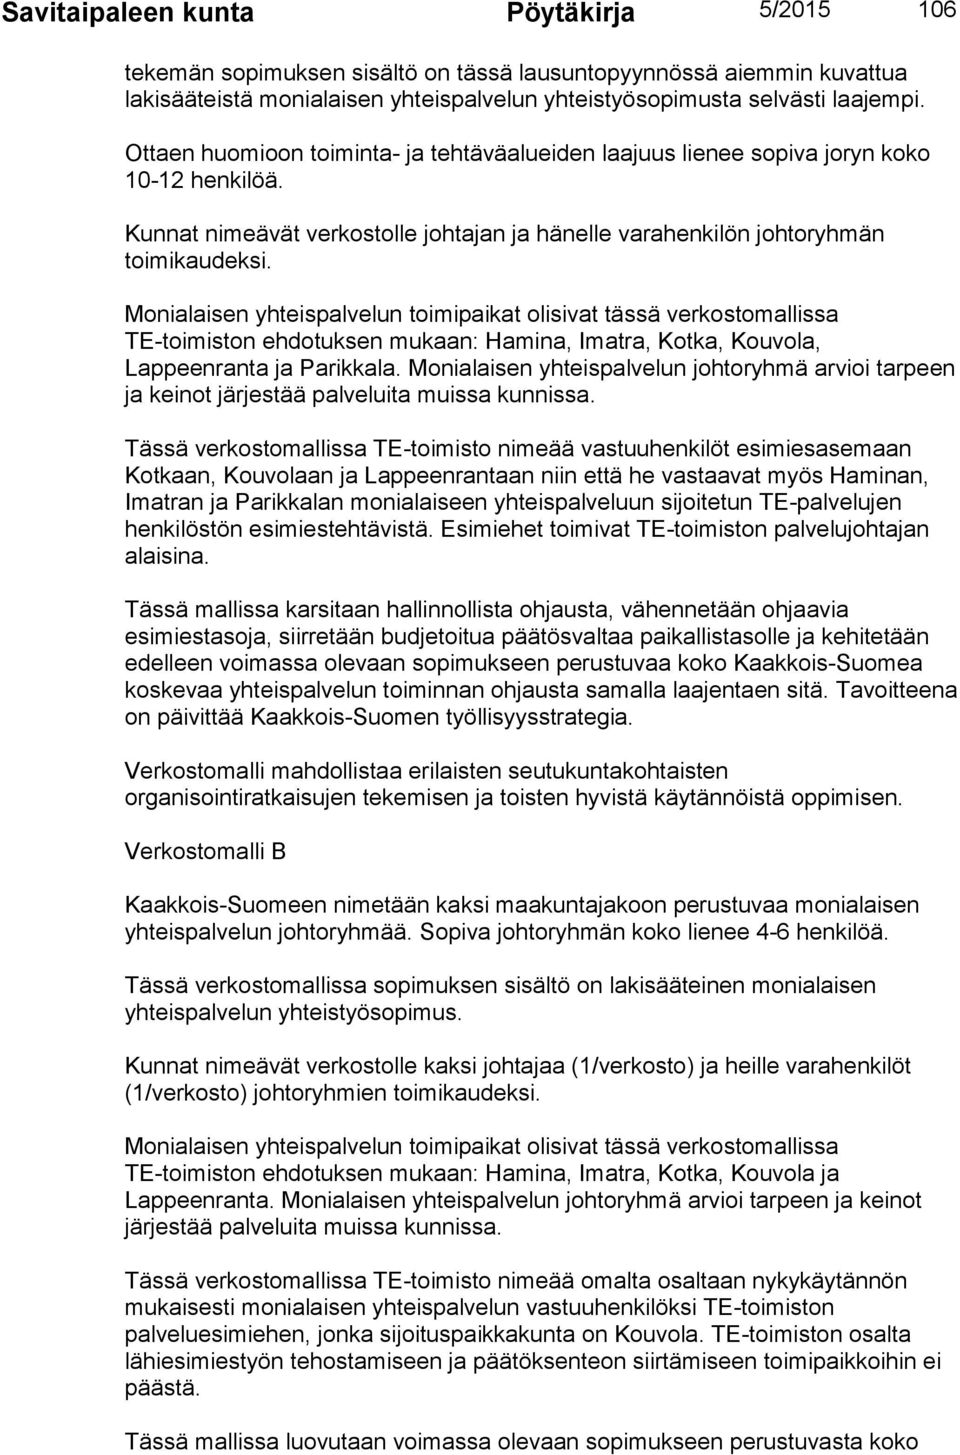 Monialaisen yhteispalvelun toimipaikat olisivat tässä verkostomallissa TE-toimiston ehdotuksen mukaan: Hamina, Imatra, Kotka, Kouvola, Lappeenranta ja Parikkala.